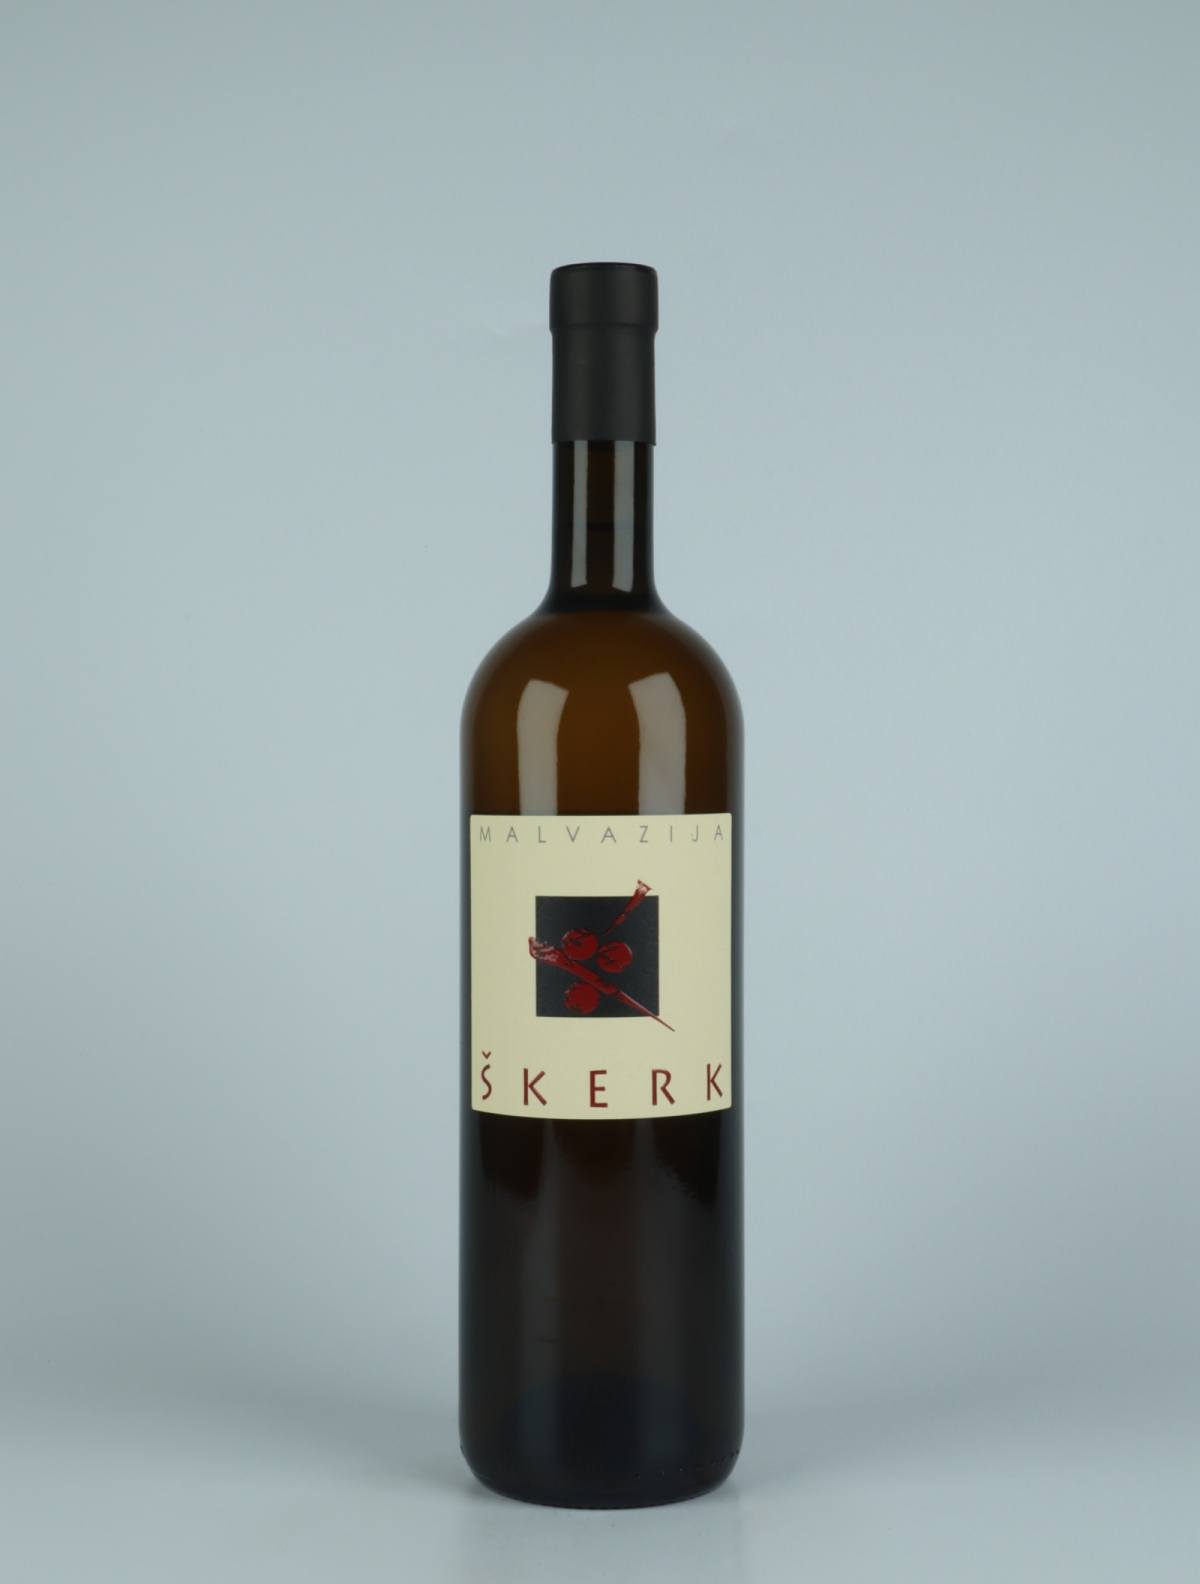 En flaske 2020 Malvazija Orange vin fra Skerk, Friuli i Italien